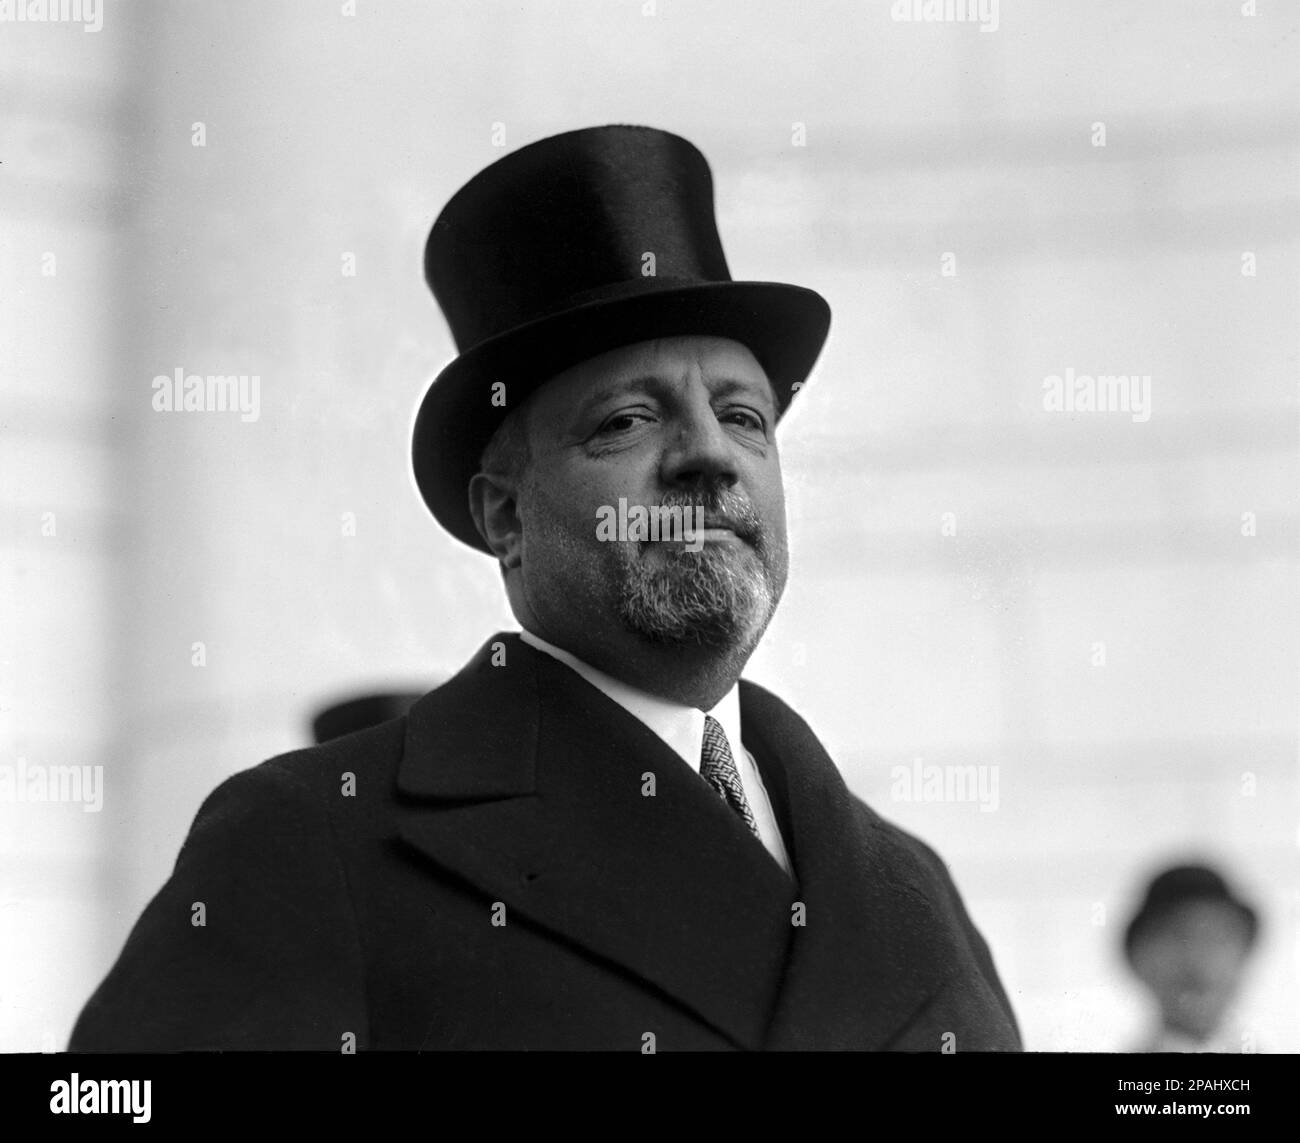 1925 , 2 novembre , Washington , Etats-Unis : le comte italien GIUSEPPE VOLPI di MISURATA ( 1877 - 1947 ) , responsable de la dette commerciale avec l'Italie et les Etats-Unis . - Nobiltà italiana - noblesse - ritratto - portrait - barbe - barba - cappello a cilindro - chapeau de tête - collier - colletto - cravate - cravatta - conte - FASCISMO - FASCISTA - FASCISTE - FASCISME - INDUSTRIEL - POLICO - POLITICA - POLITIQUE --- Archivio GBB Banque D'Images